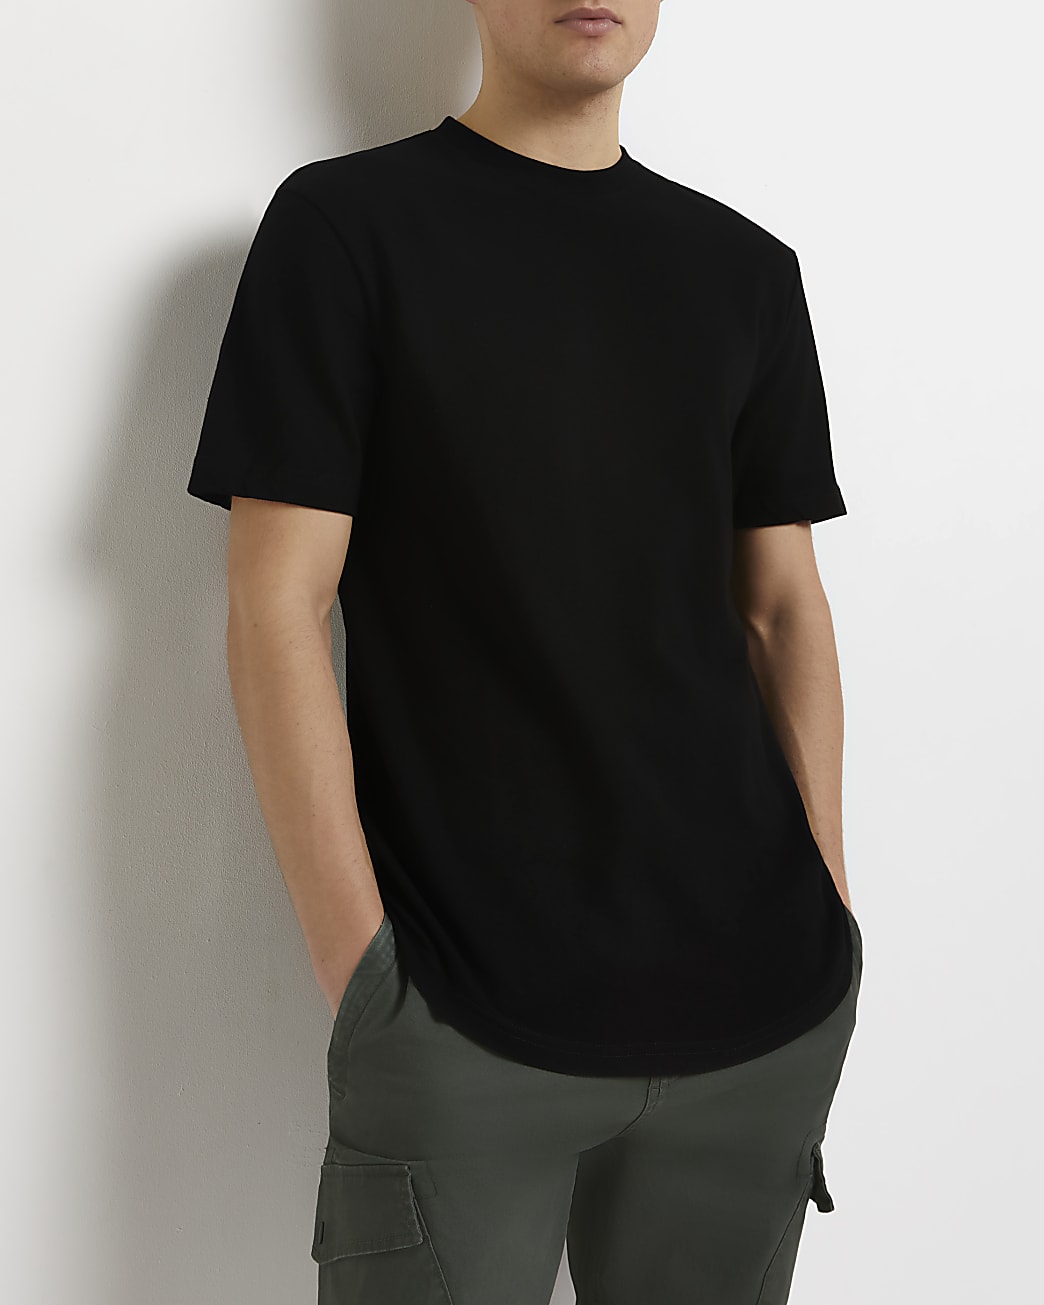 Black slim fit pique curved hem t-shirt